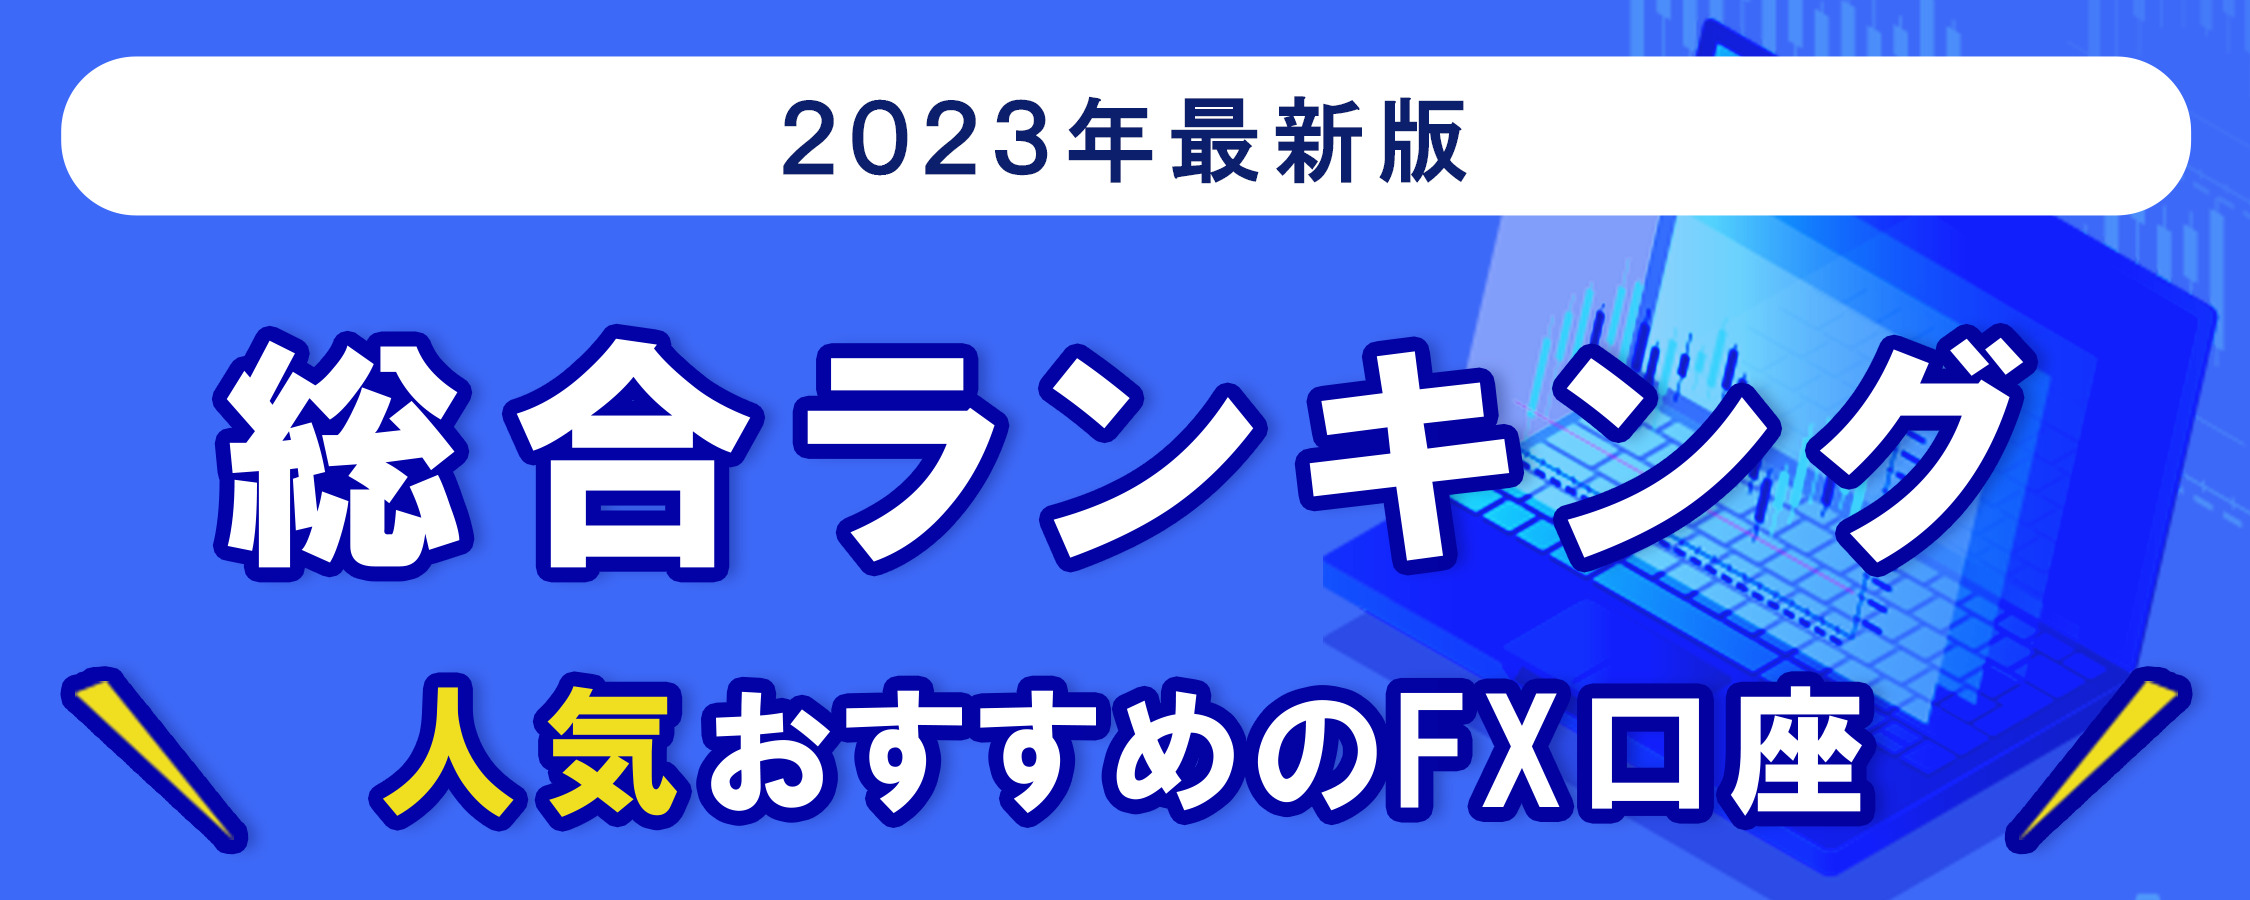 人気のFX会社総合ランキング<!--yda02-->